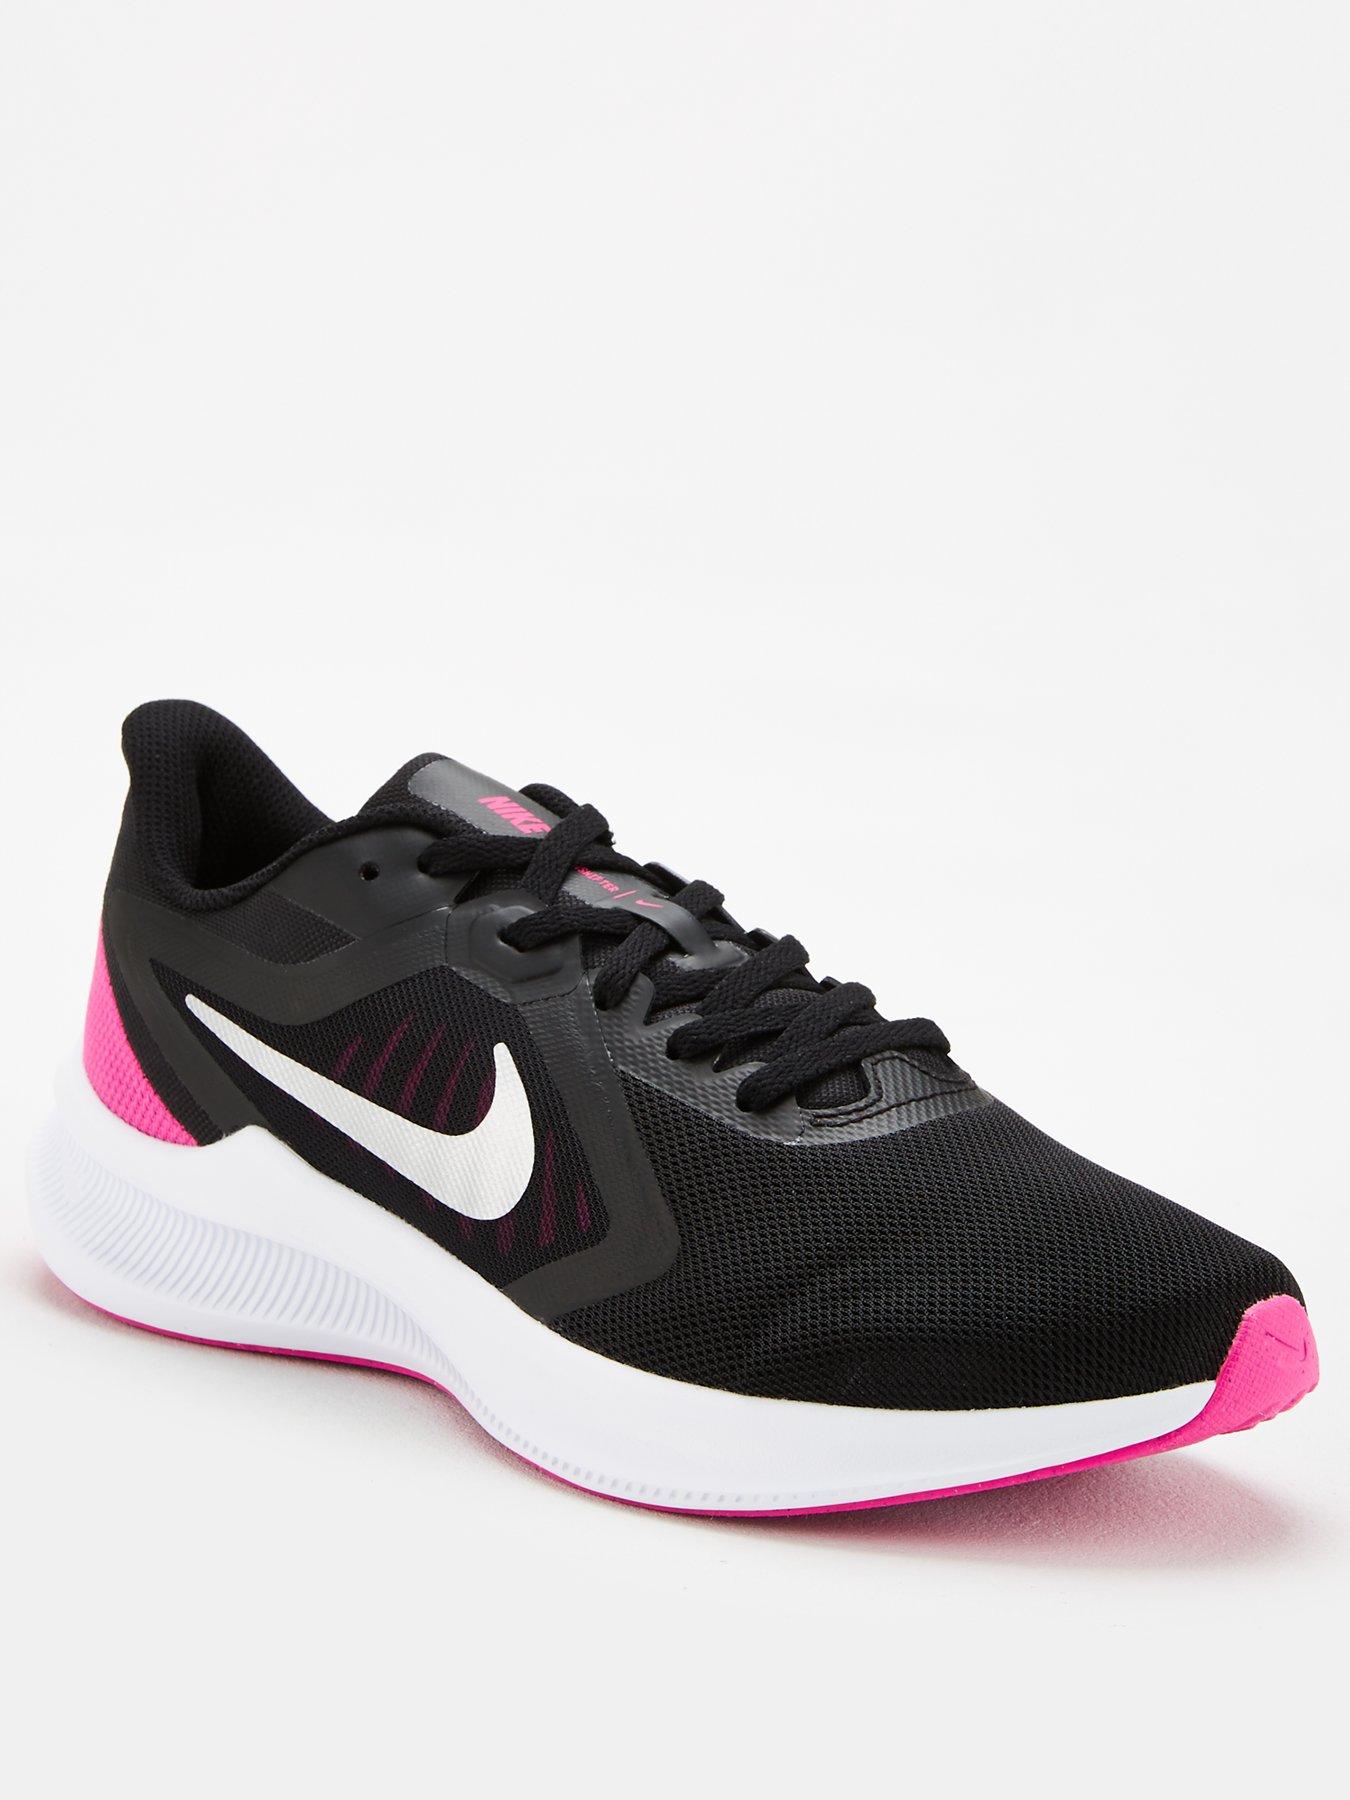 Nike Women's Trainers \u0026 Runners 